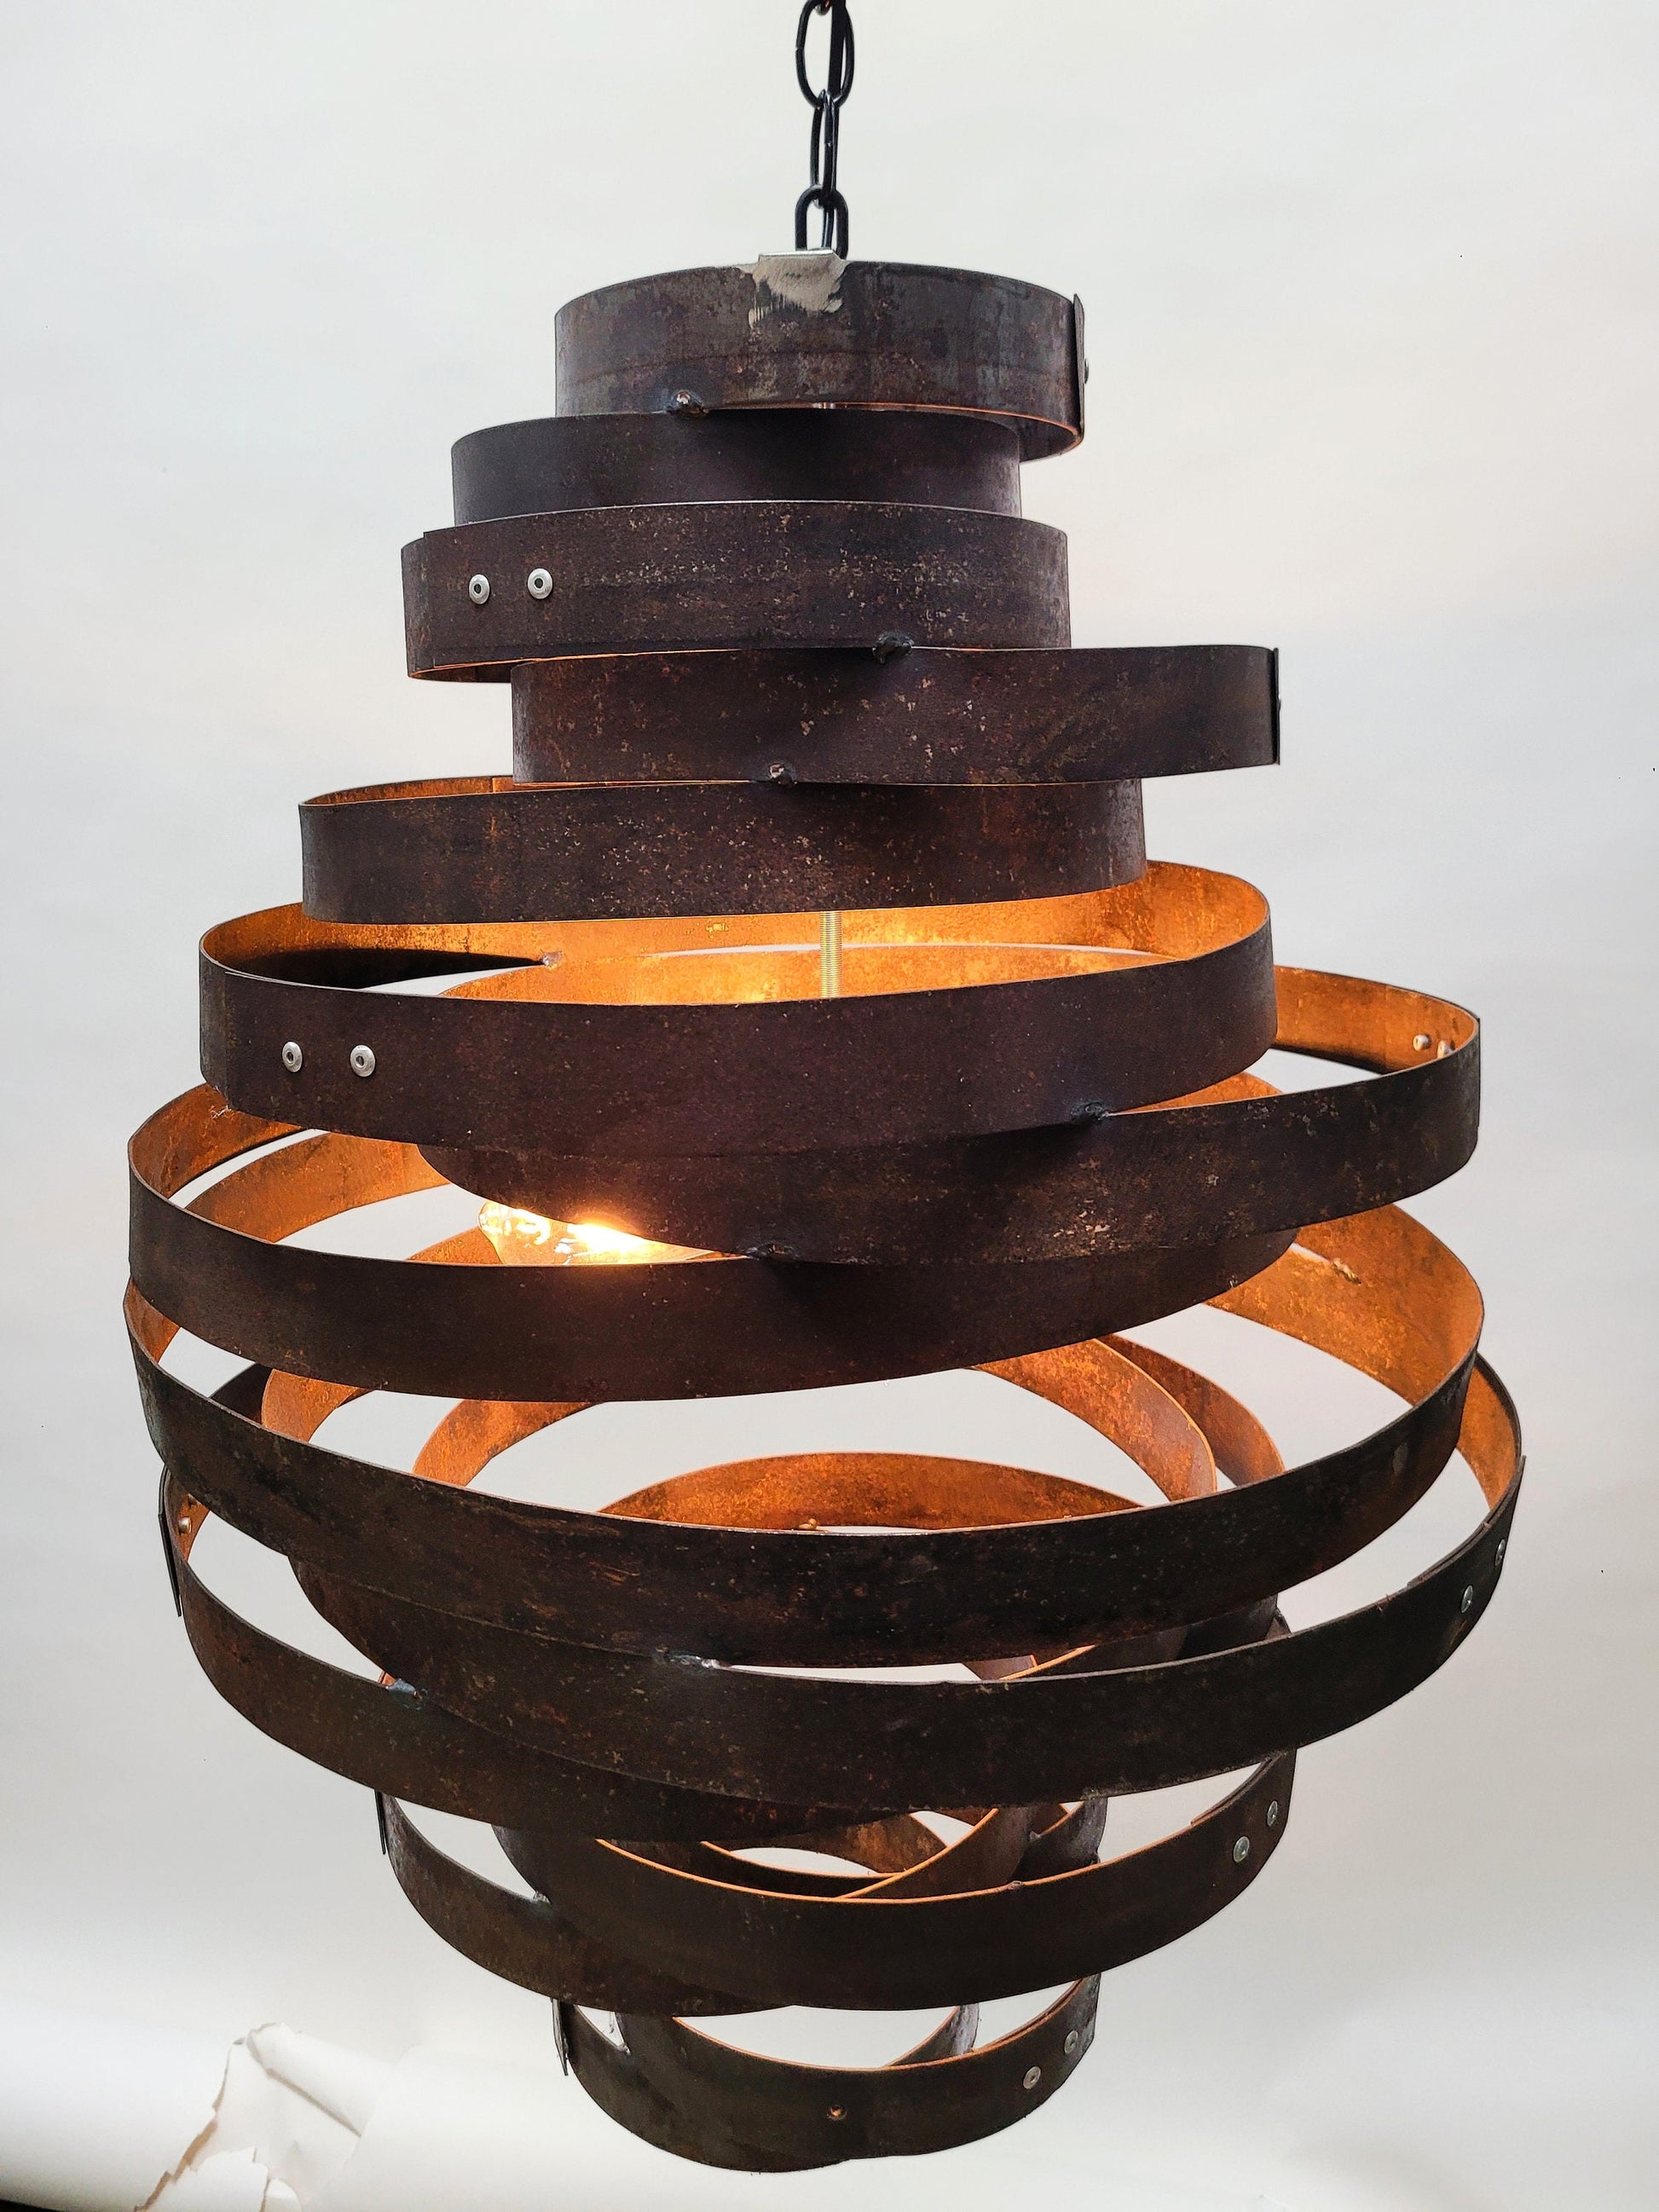 Whiskey Barrel Ring Pendant Light - Virvela- Made from Retired Whisky barrel rings. 100% Recycled!